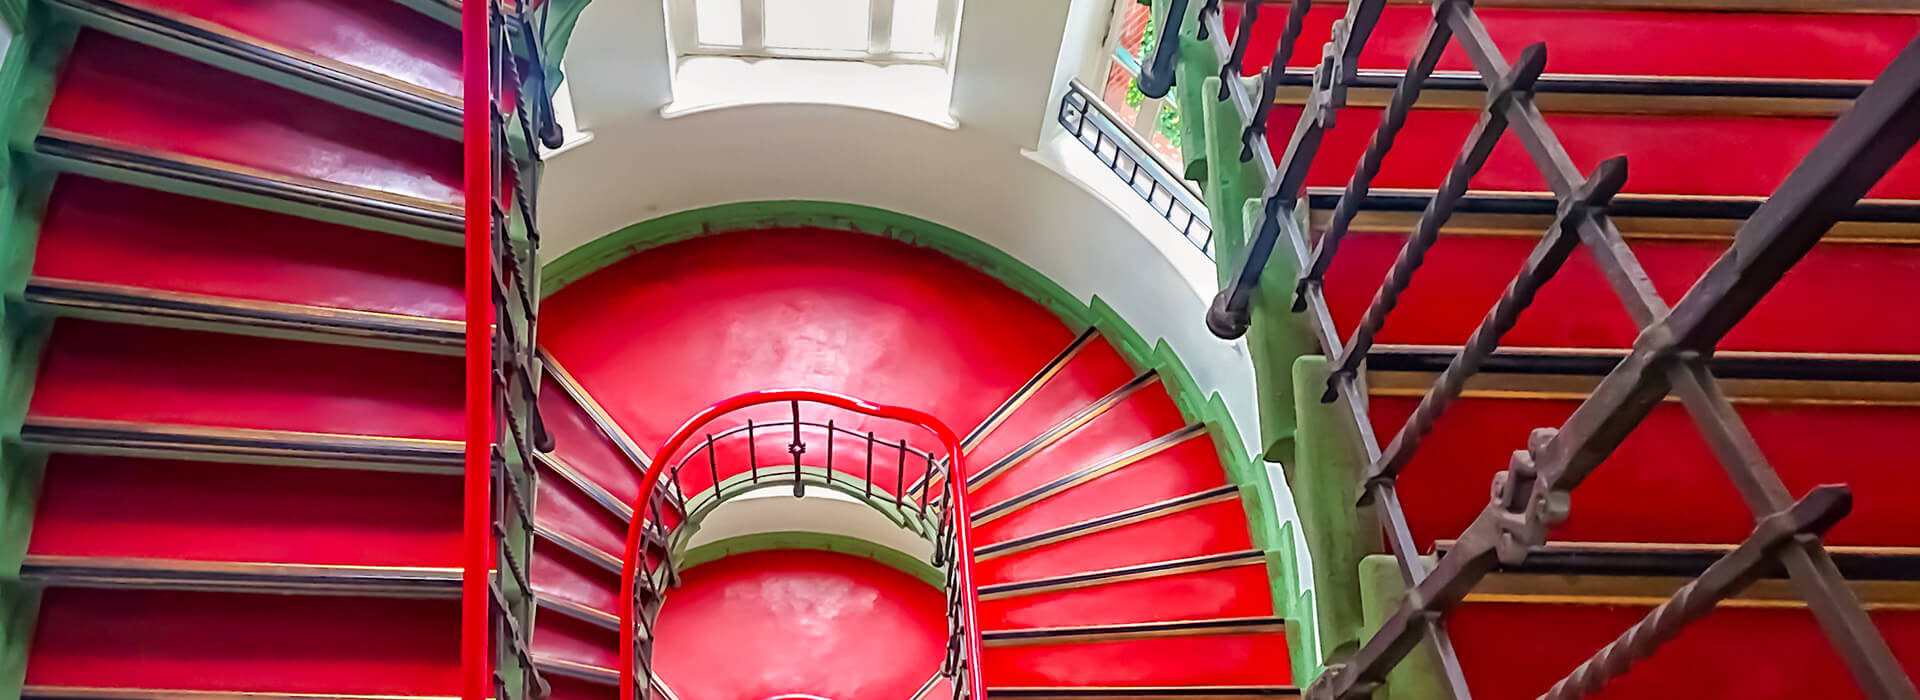 Renovierung eines Altbau Treppenhauses mit rotem Boden